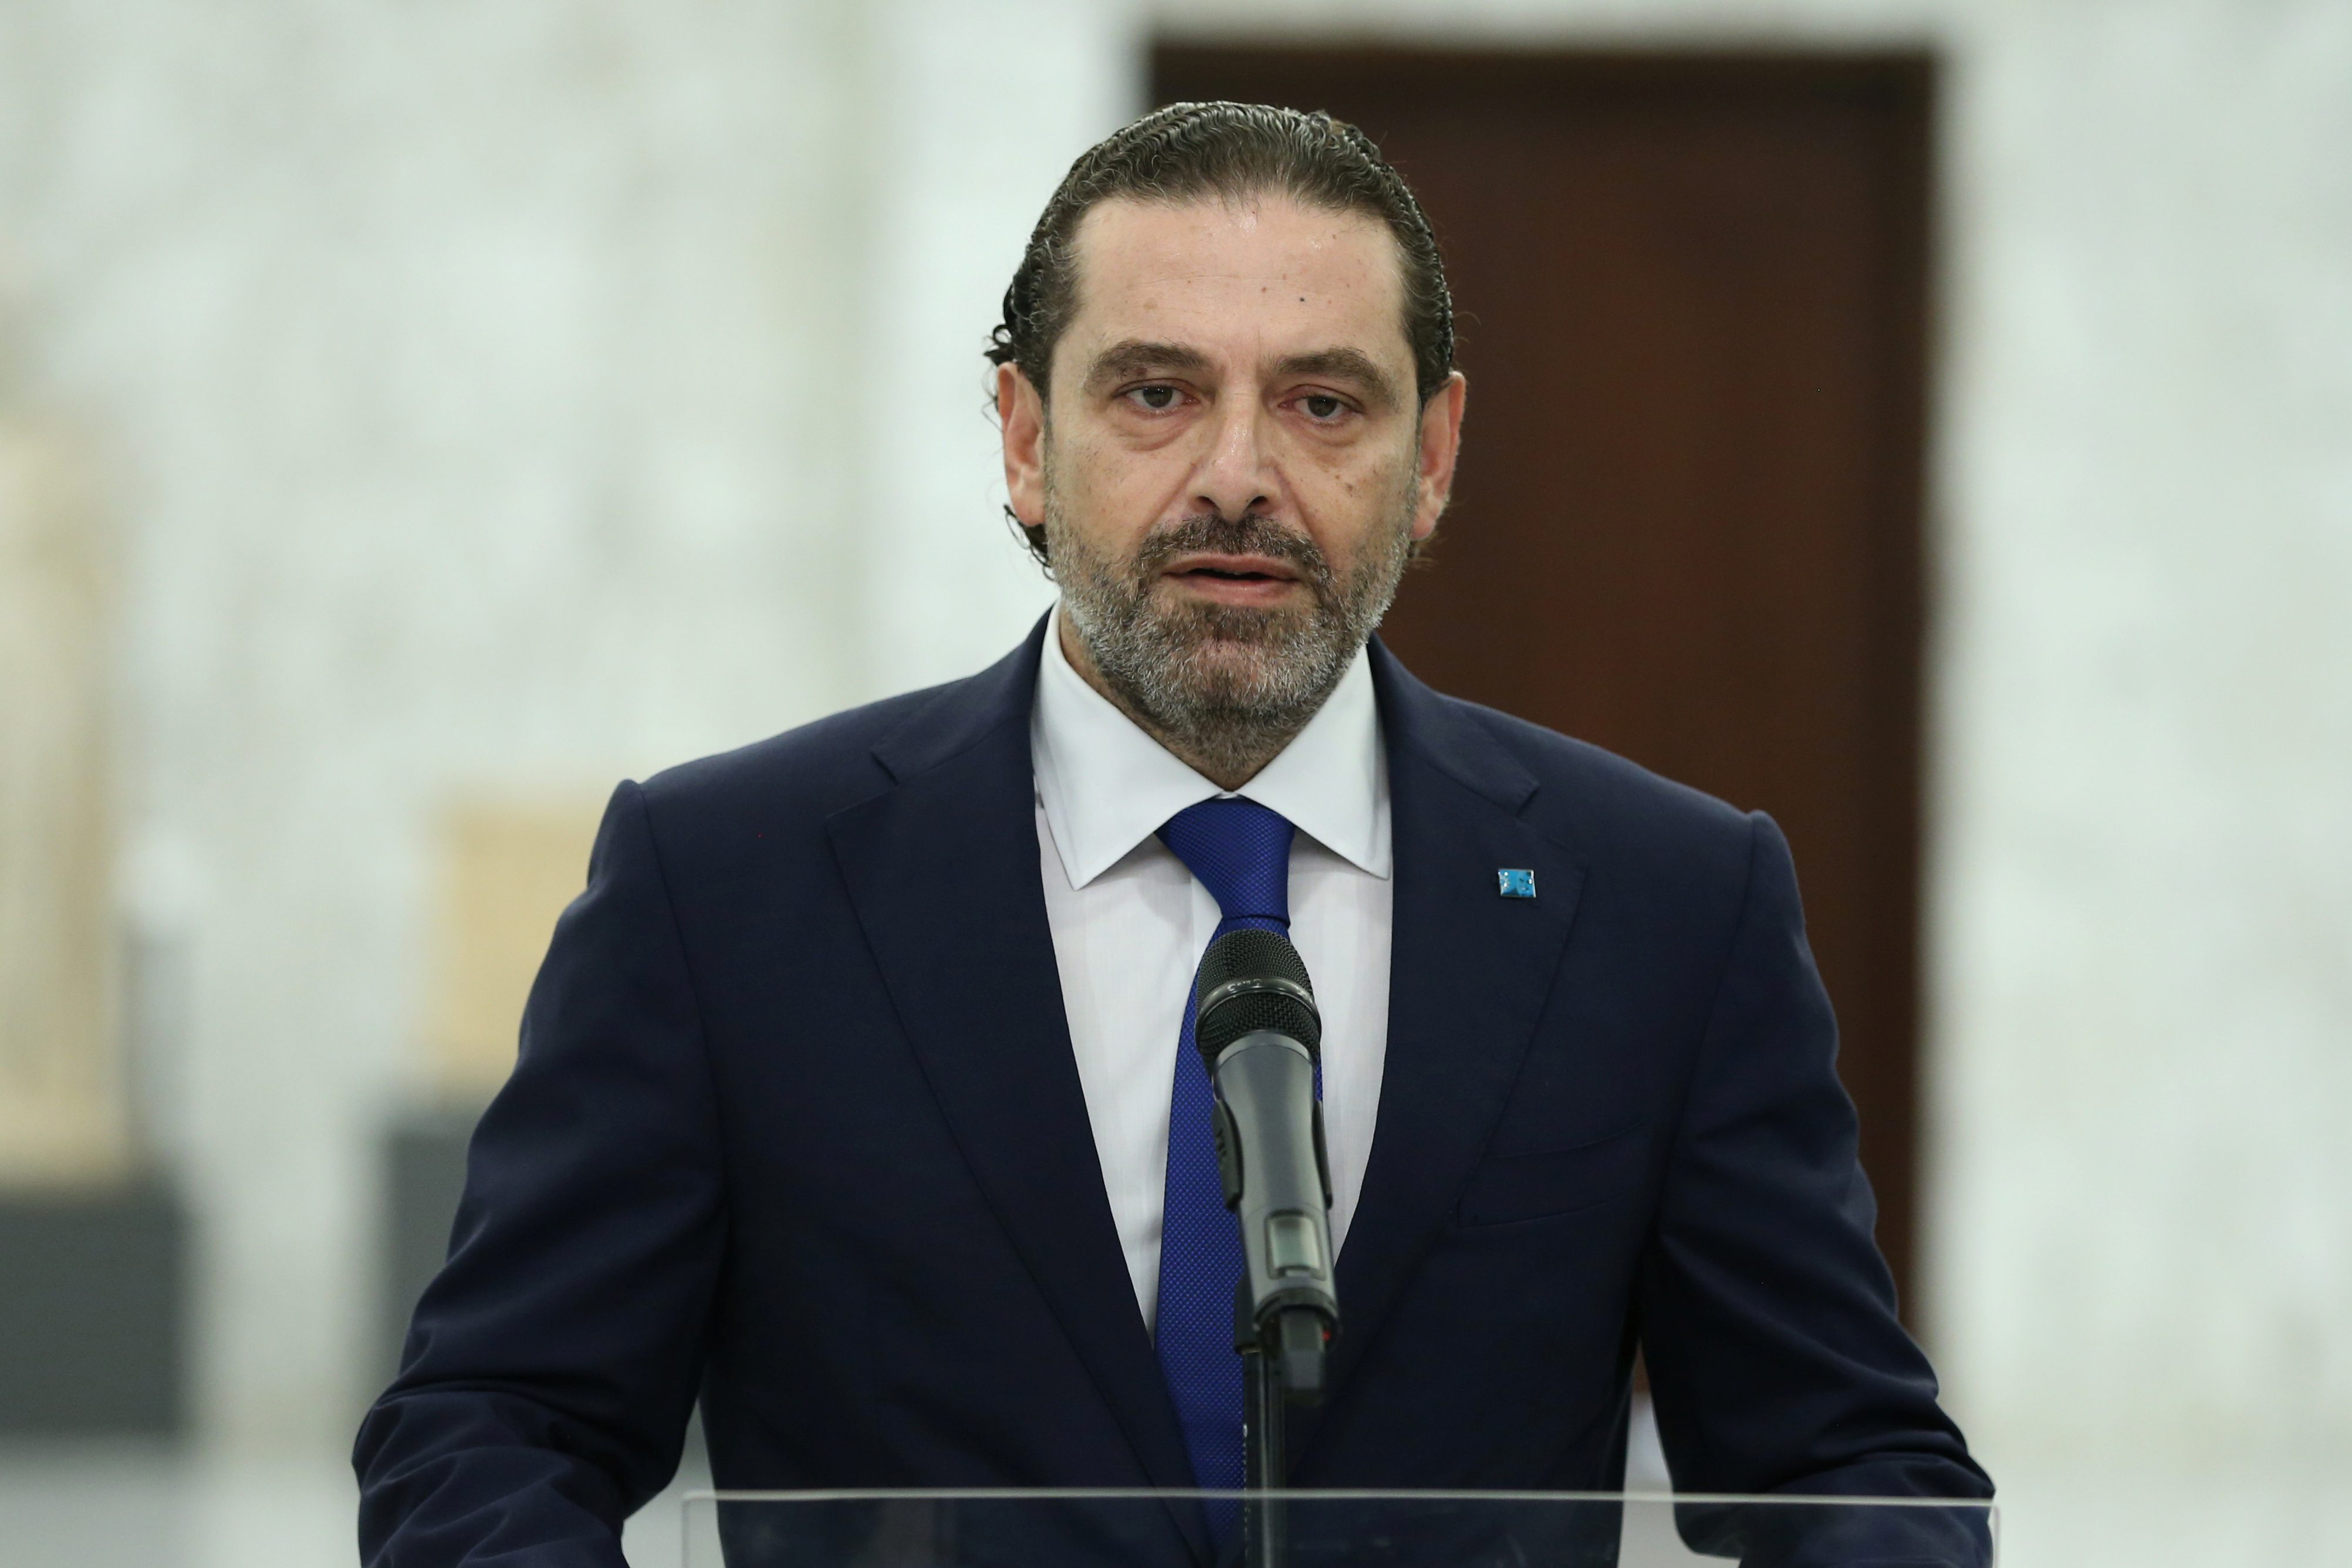 Lebanon spins further into crisis as Hariri abandons bid to form government